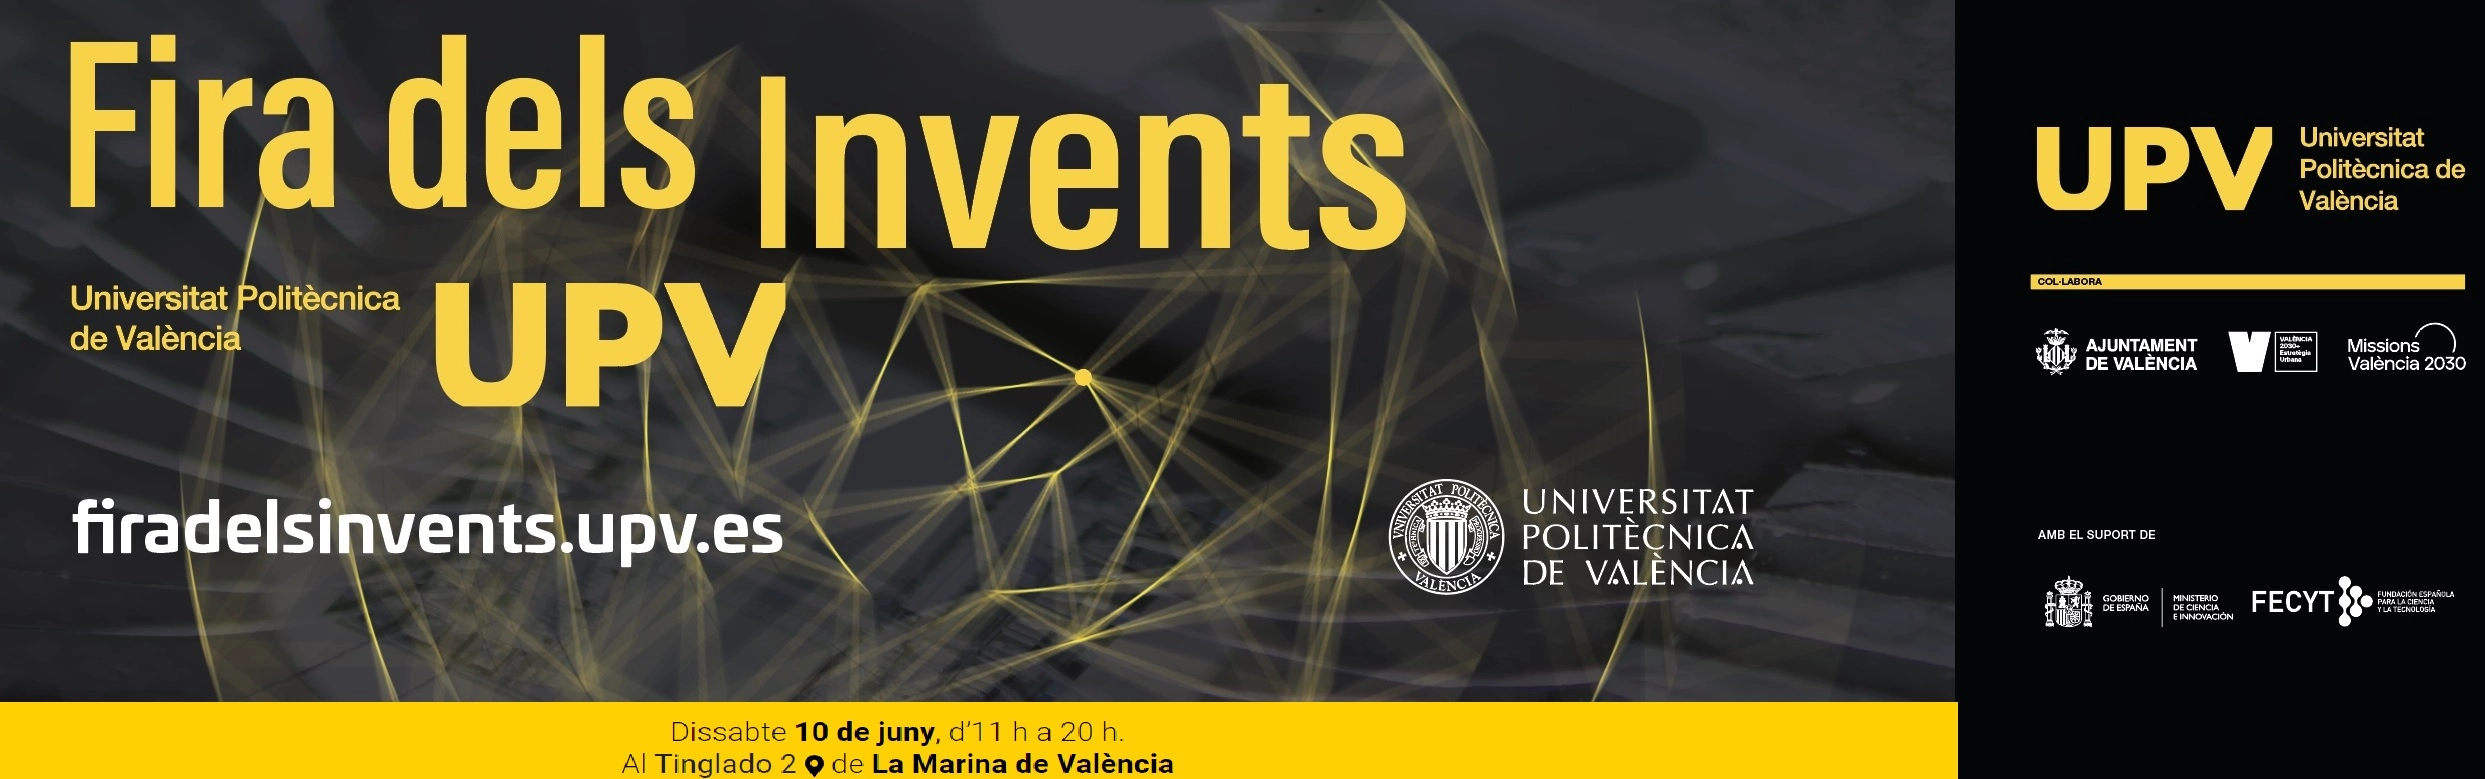 Cartel de la Feria de los Inventos de la Universidad Politécnica de Valencia